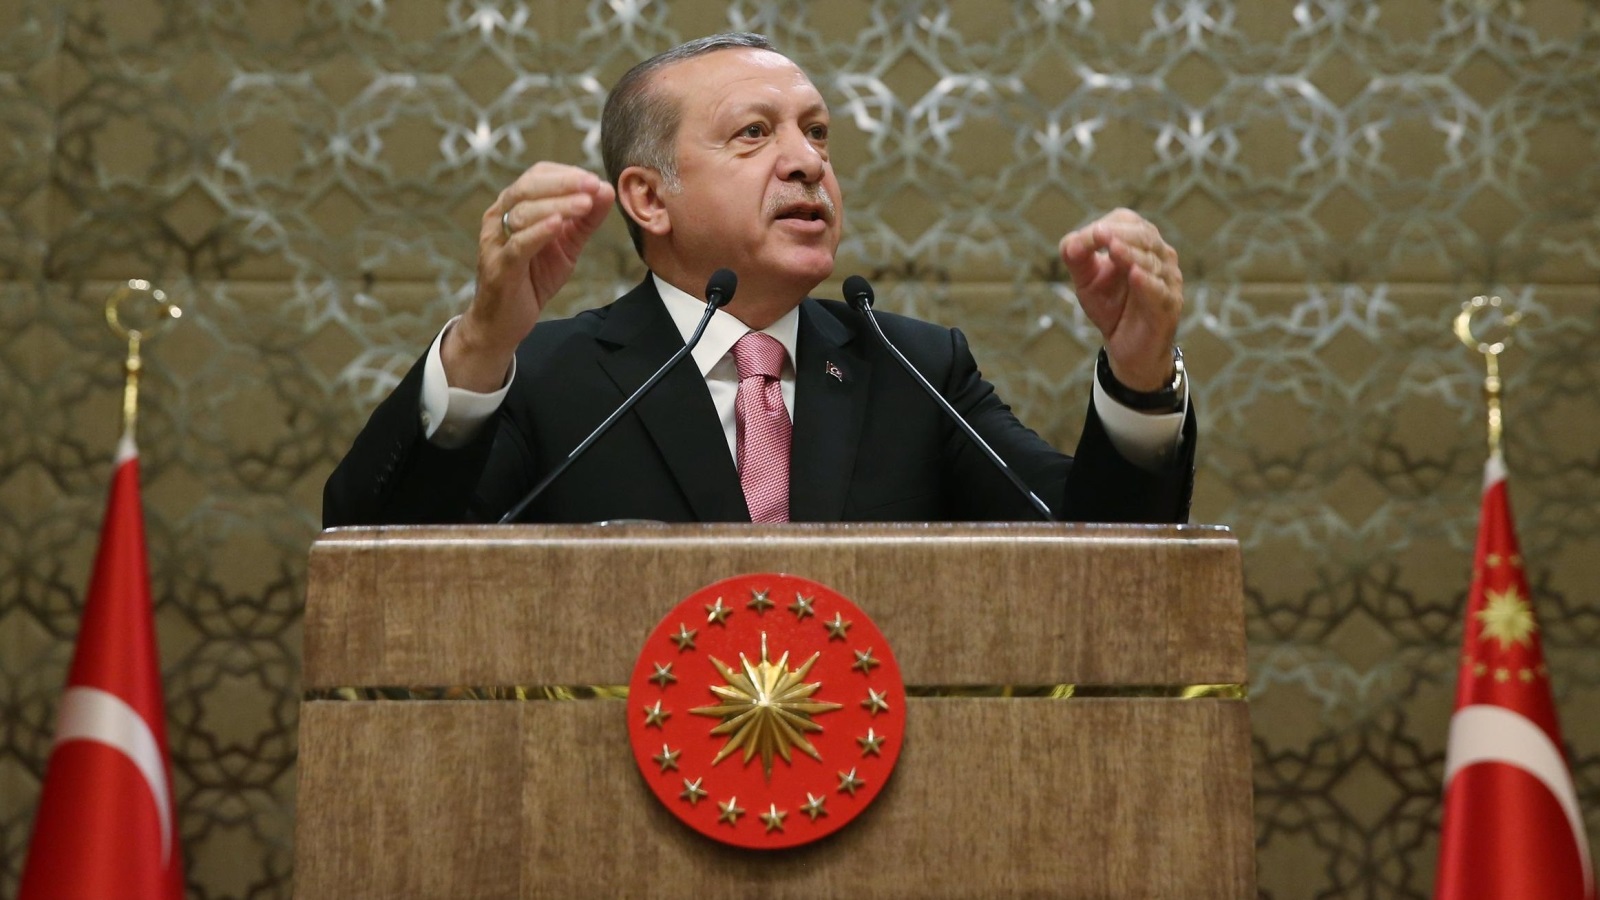 ‪أردوغان قال أمس إن تركيا قد تراجع علاقاتها مع أوروبا بعد استفتاء 16 أبريل/نيسان المقبل‬  (الأوروبية)